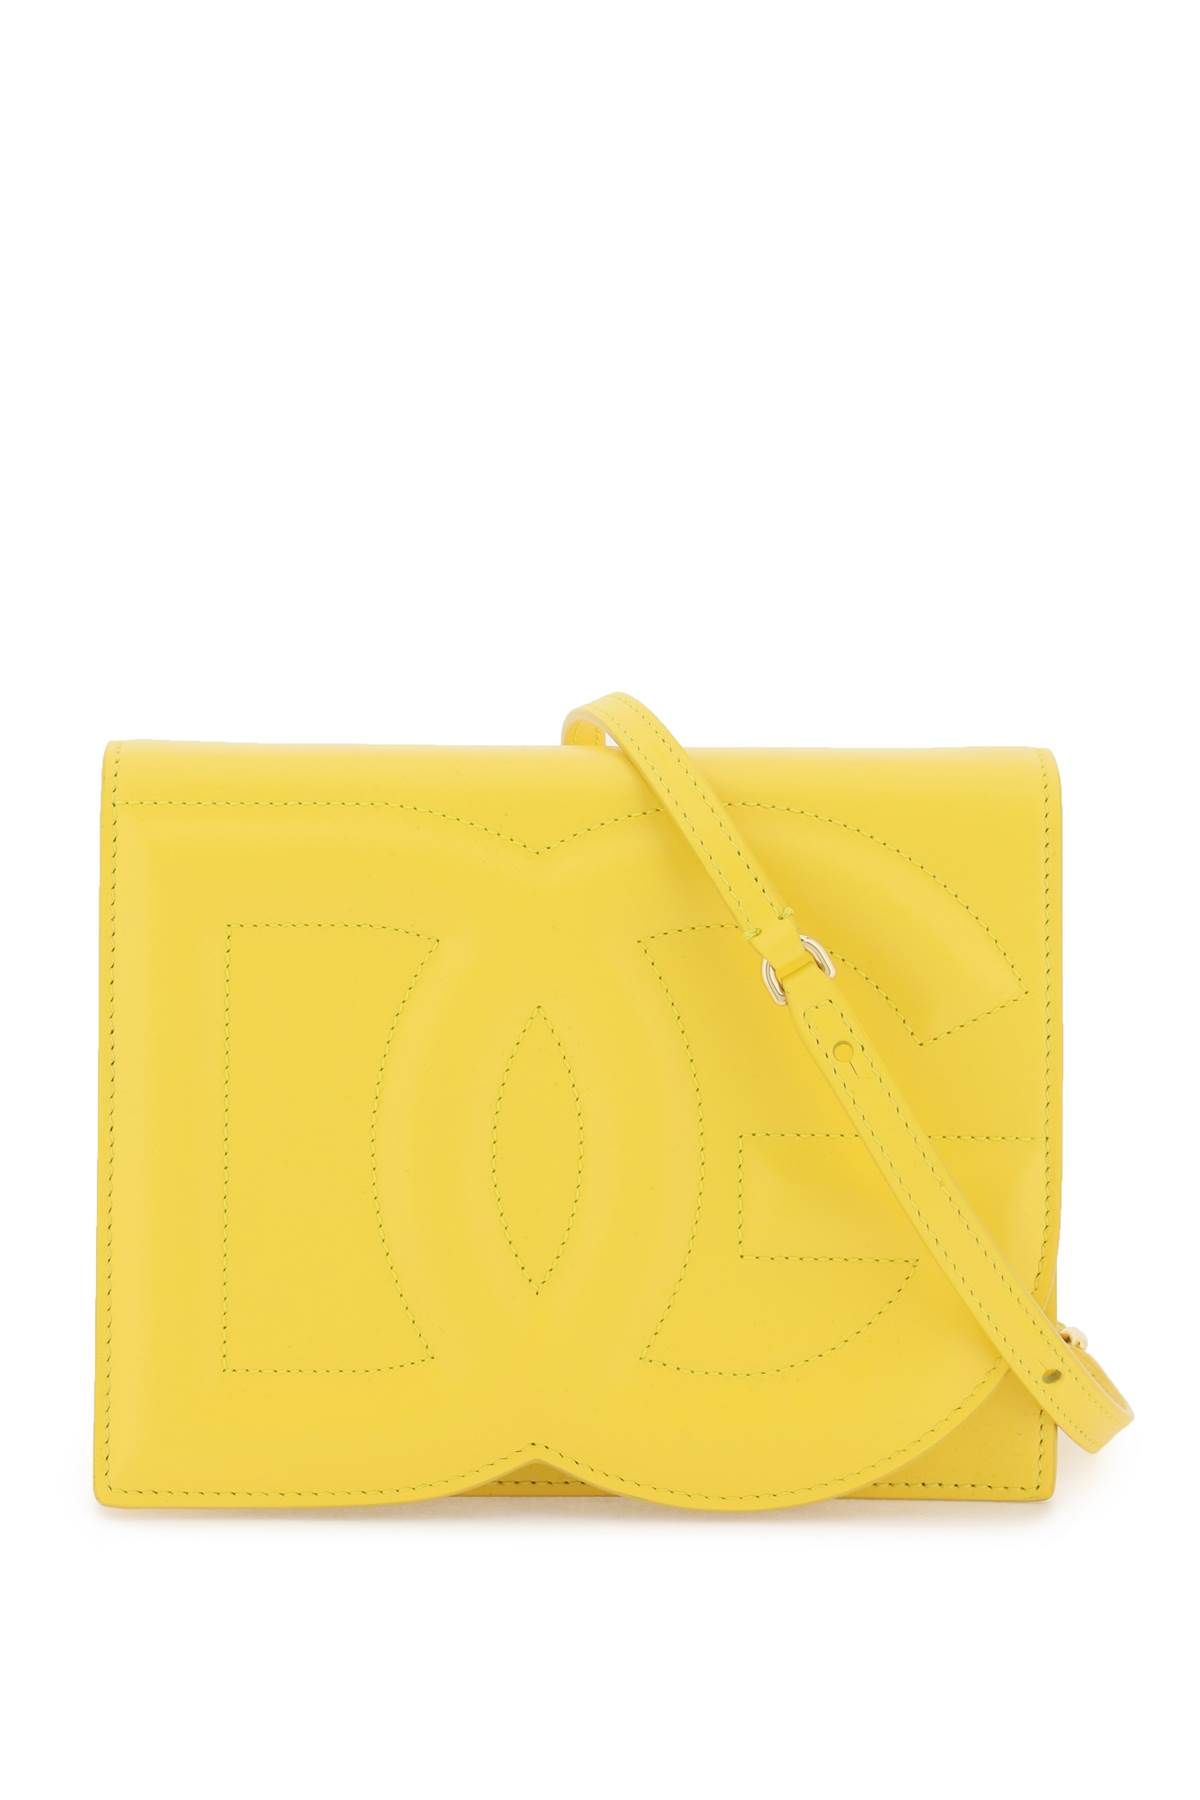 Dolce & Gabbana DOLCE & GABBANA dg logo crossbody bag